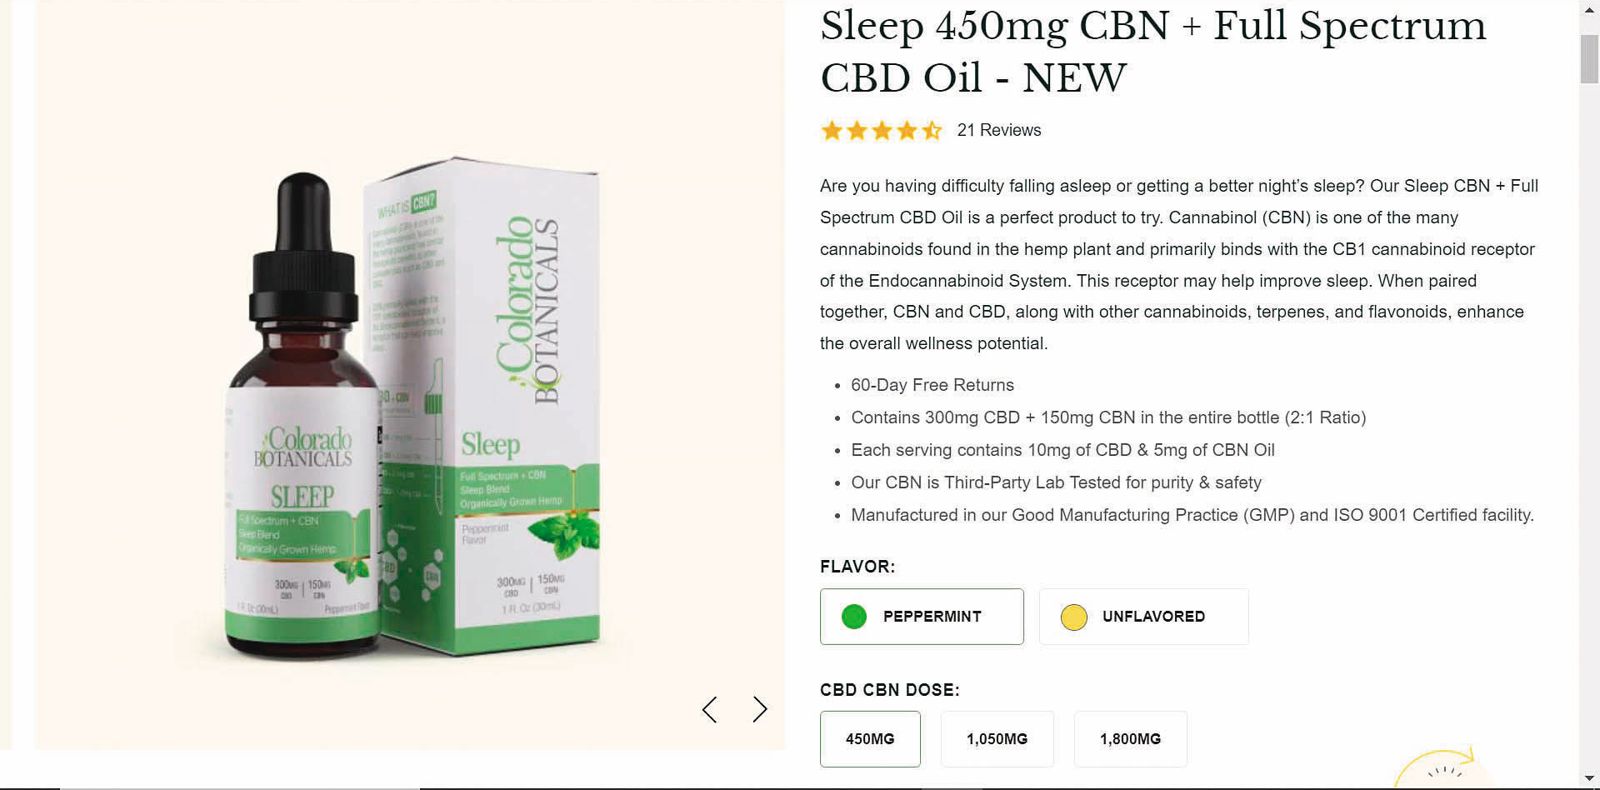 殷琪購買知名大麻產品網站「Colorado Botanicals」的Sleep精油，含有大麻成分。（圖／讀者提供）